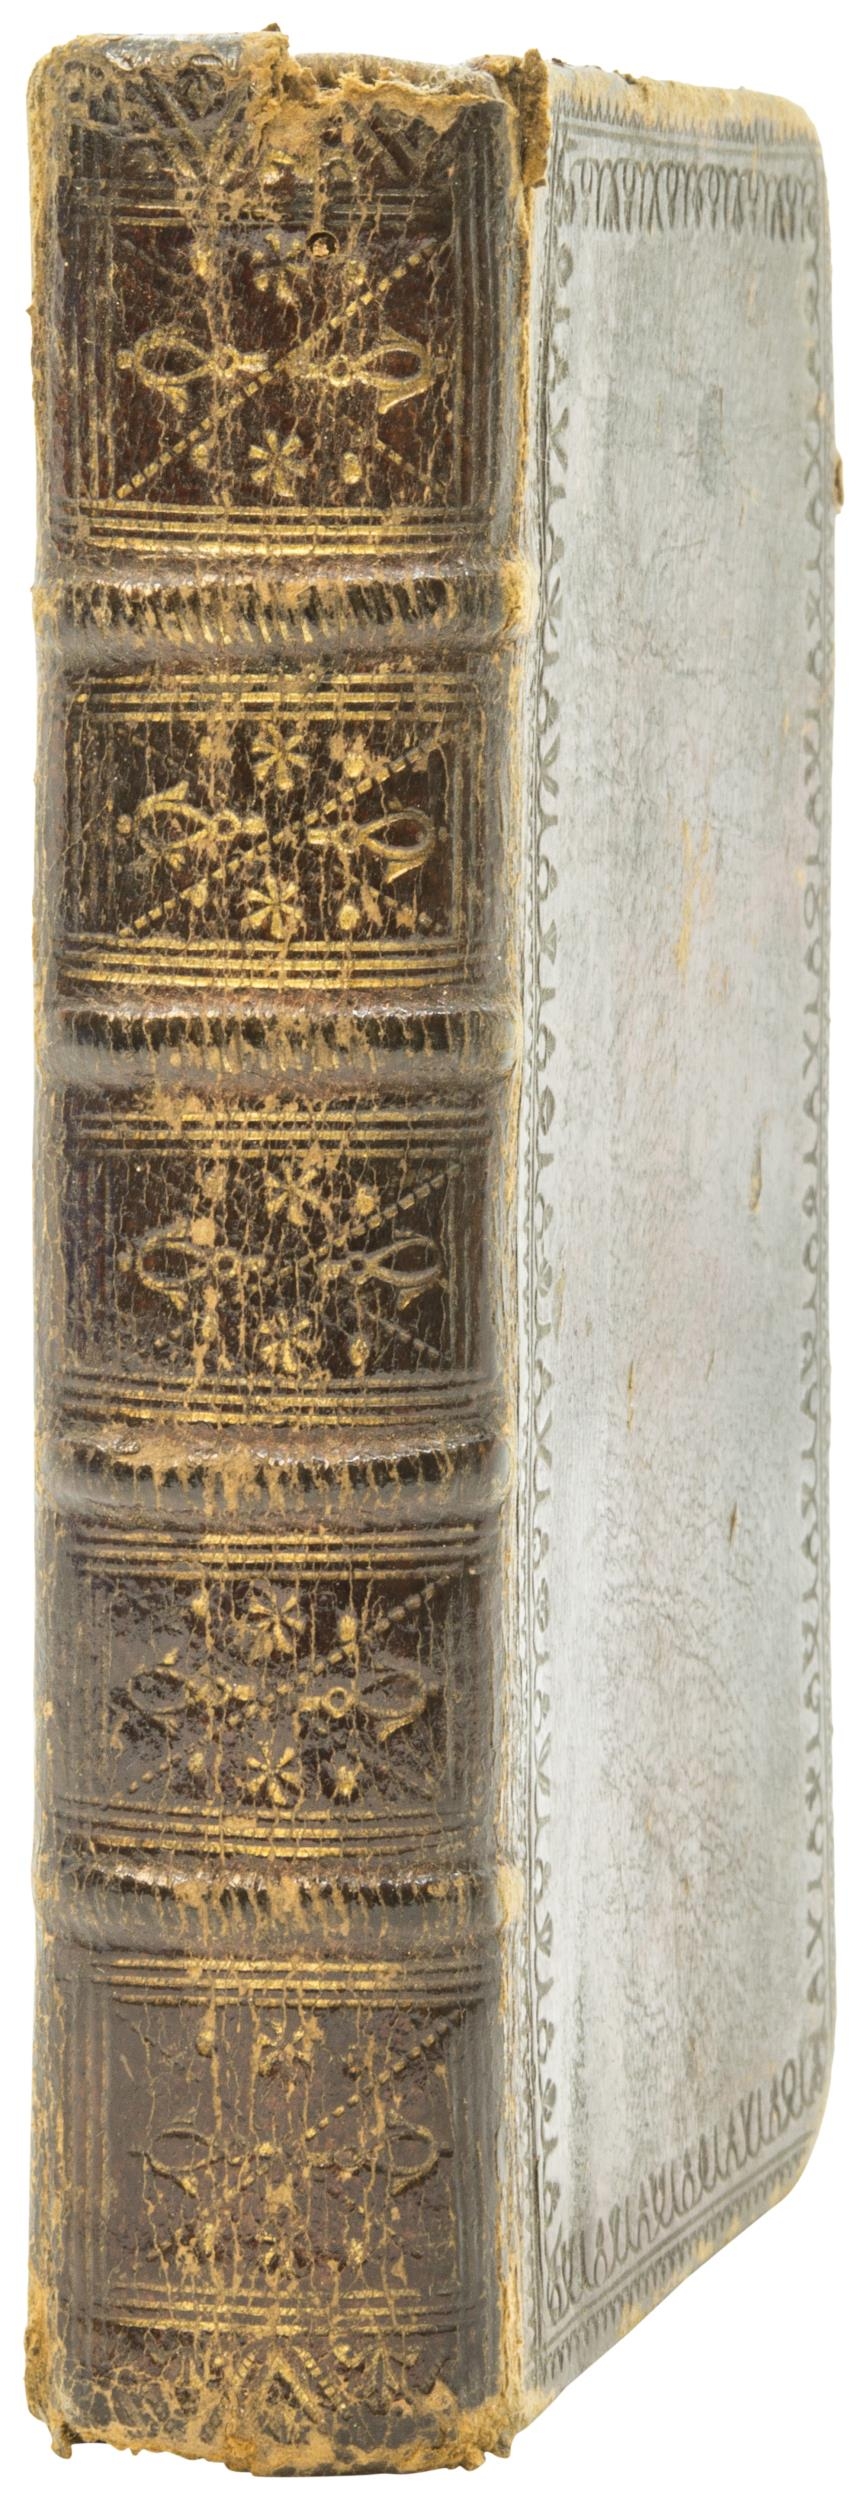 BOOK OF COMMON PRAYER, sm.8vo, contemporary calf, spine gilt slight wear, Oxford, 1766 - Image 3 of 4